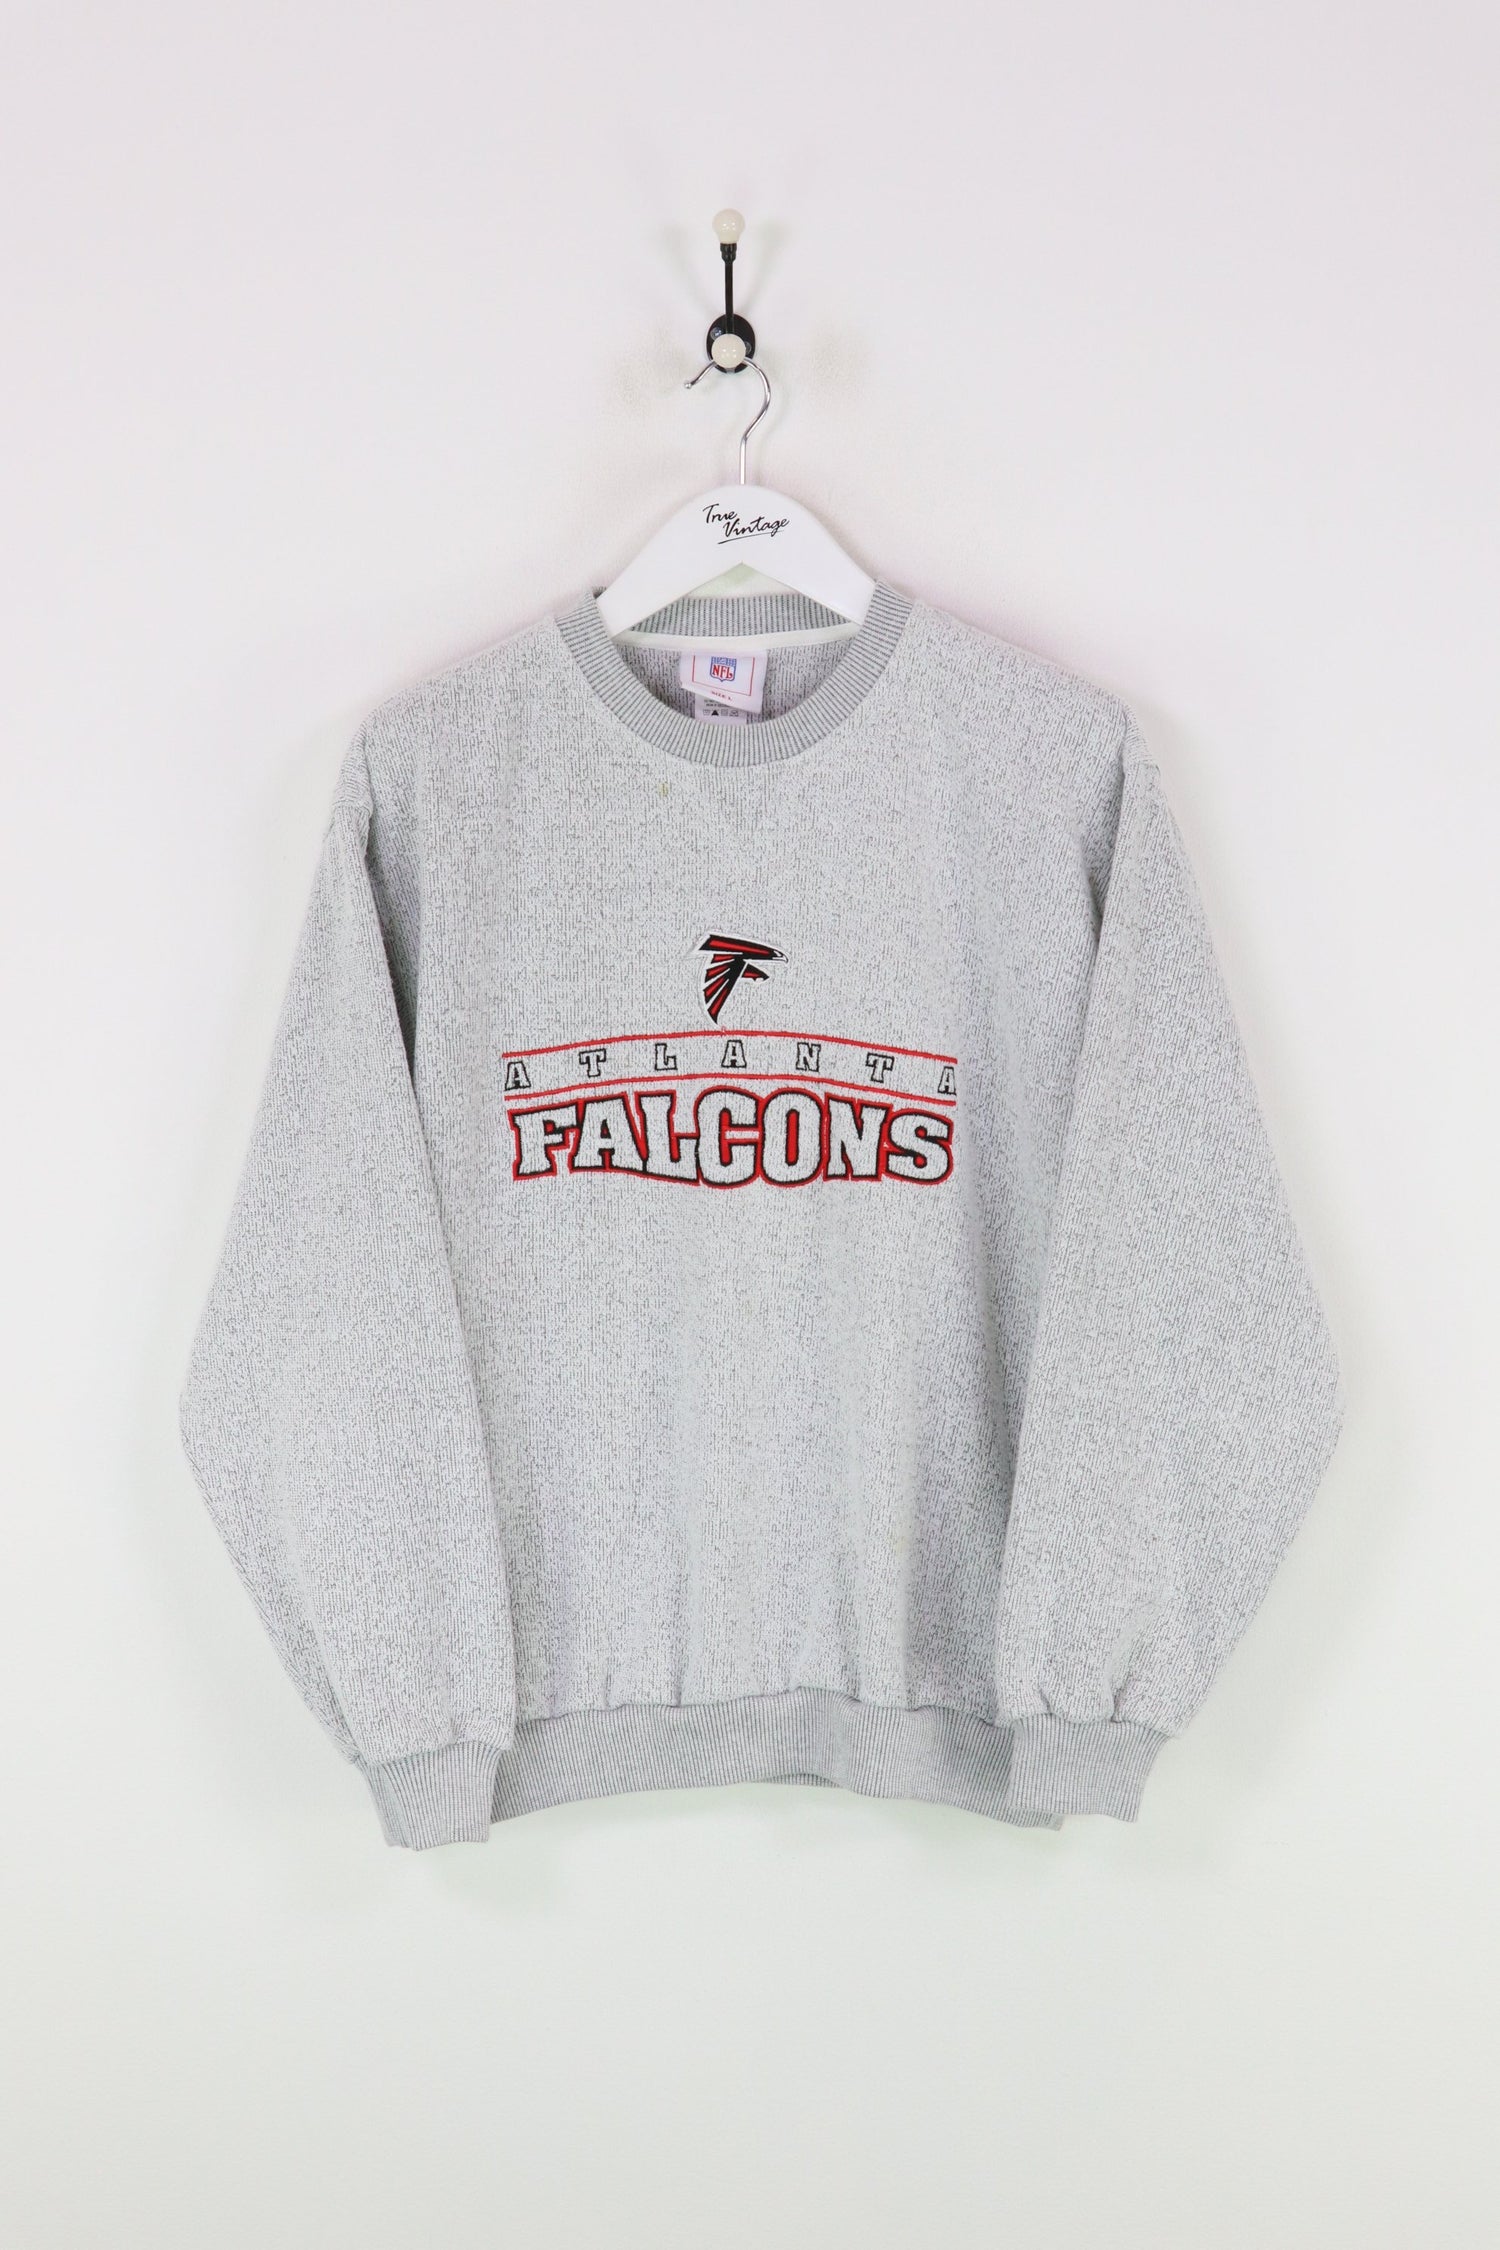 Atlanta Falcons Sweatshirt Grey Large